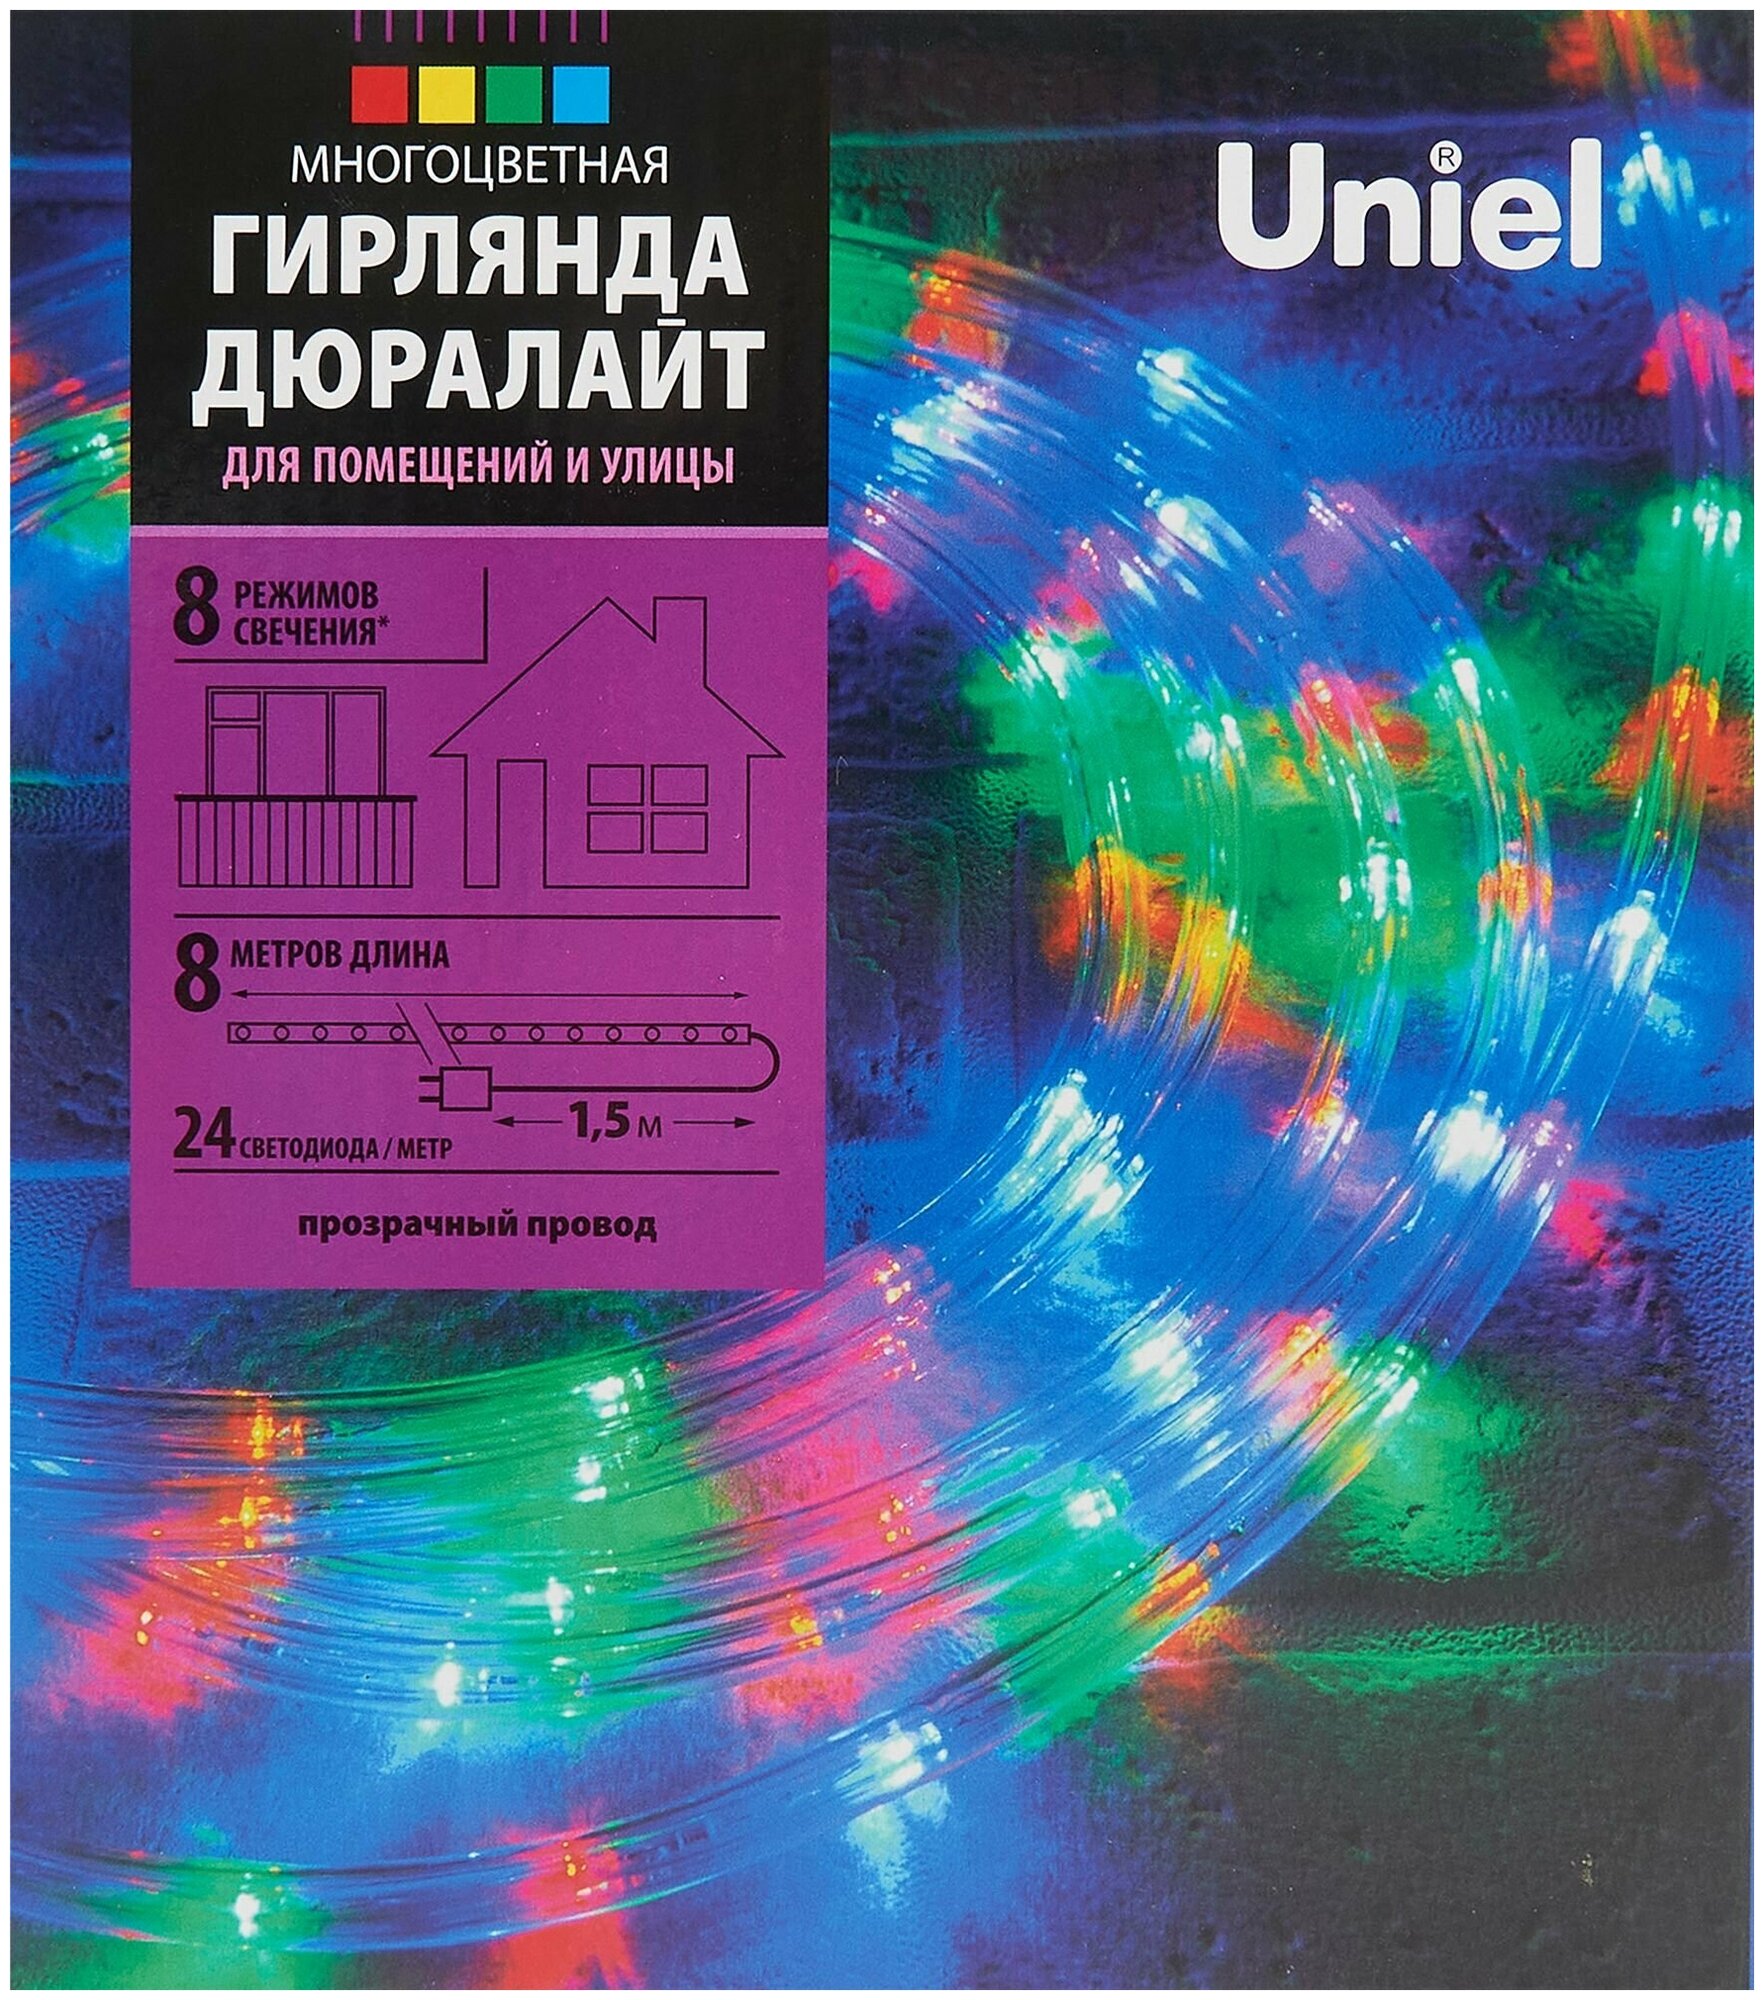 Электрогирлянда универсальная Uniel Дюралайт 8м 192 ламп разноцветный 8 режимов работы - фото №9